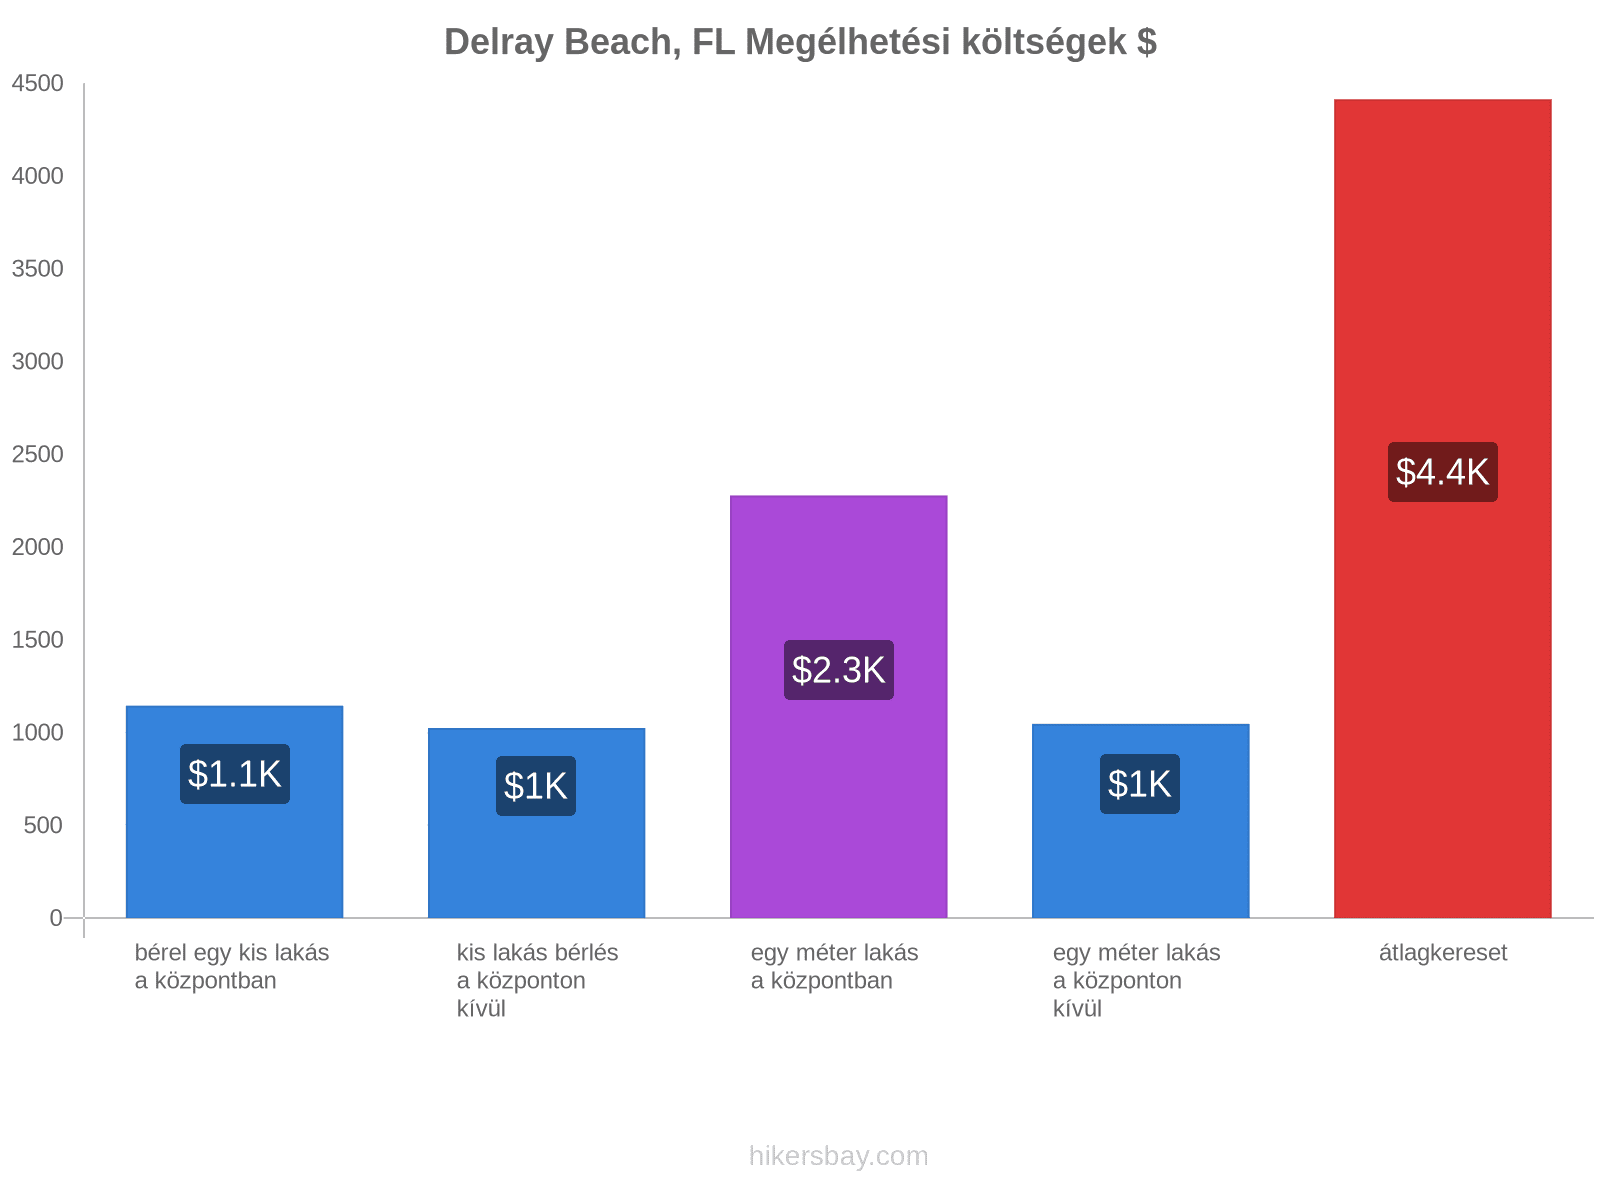 Delray Beach, FL megélhetési költségek hikersbay.com